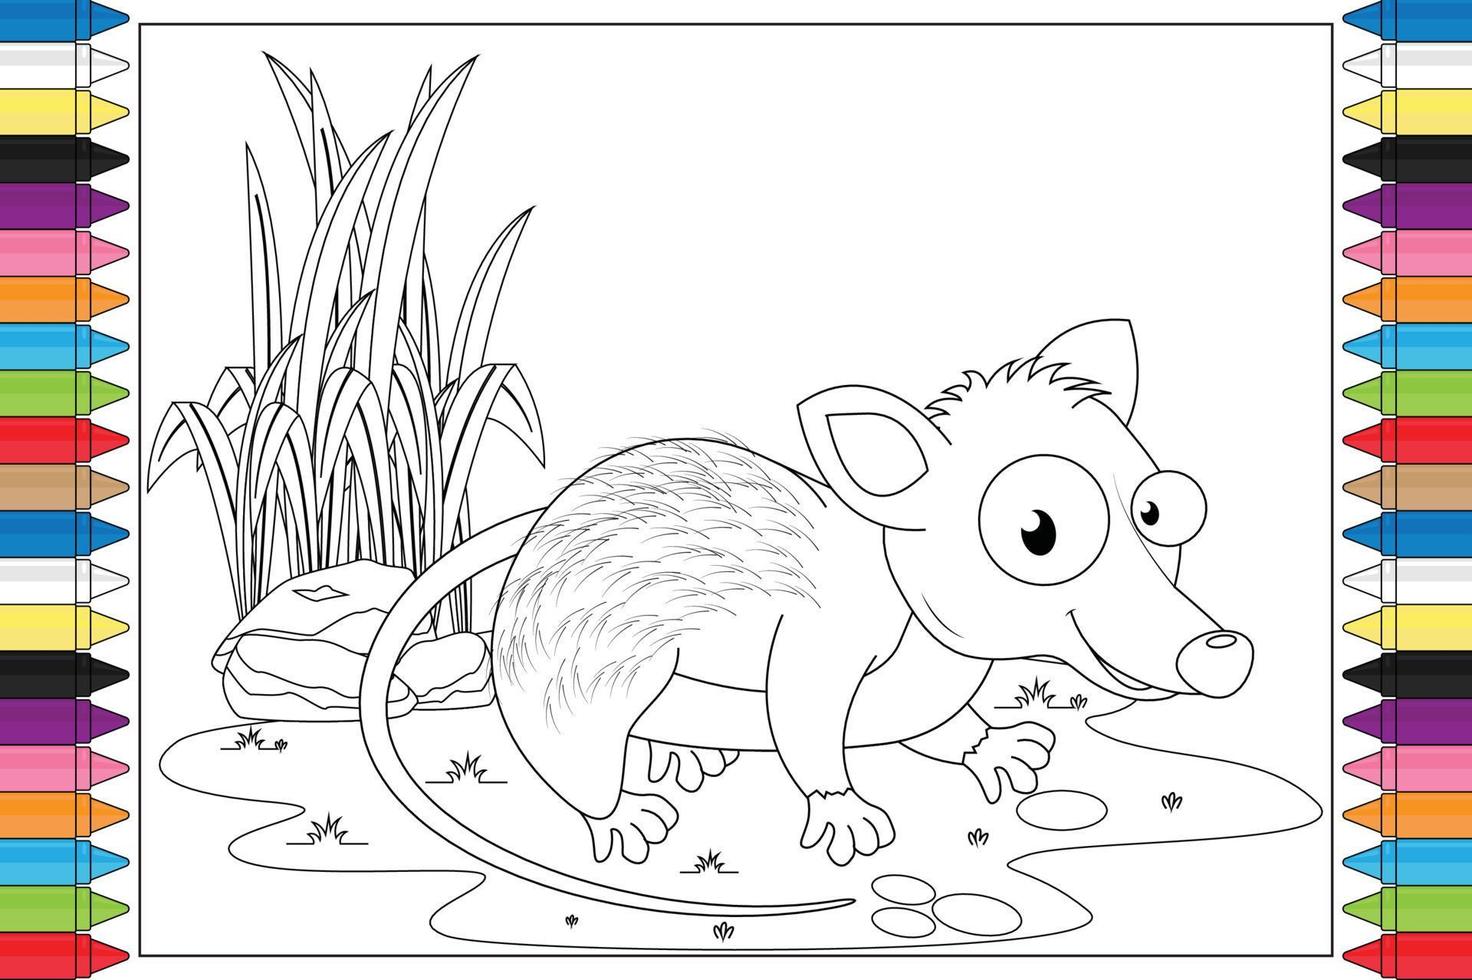 coloriage de dessin animé animal mignon pour les enfants vecteur